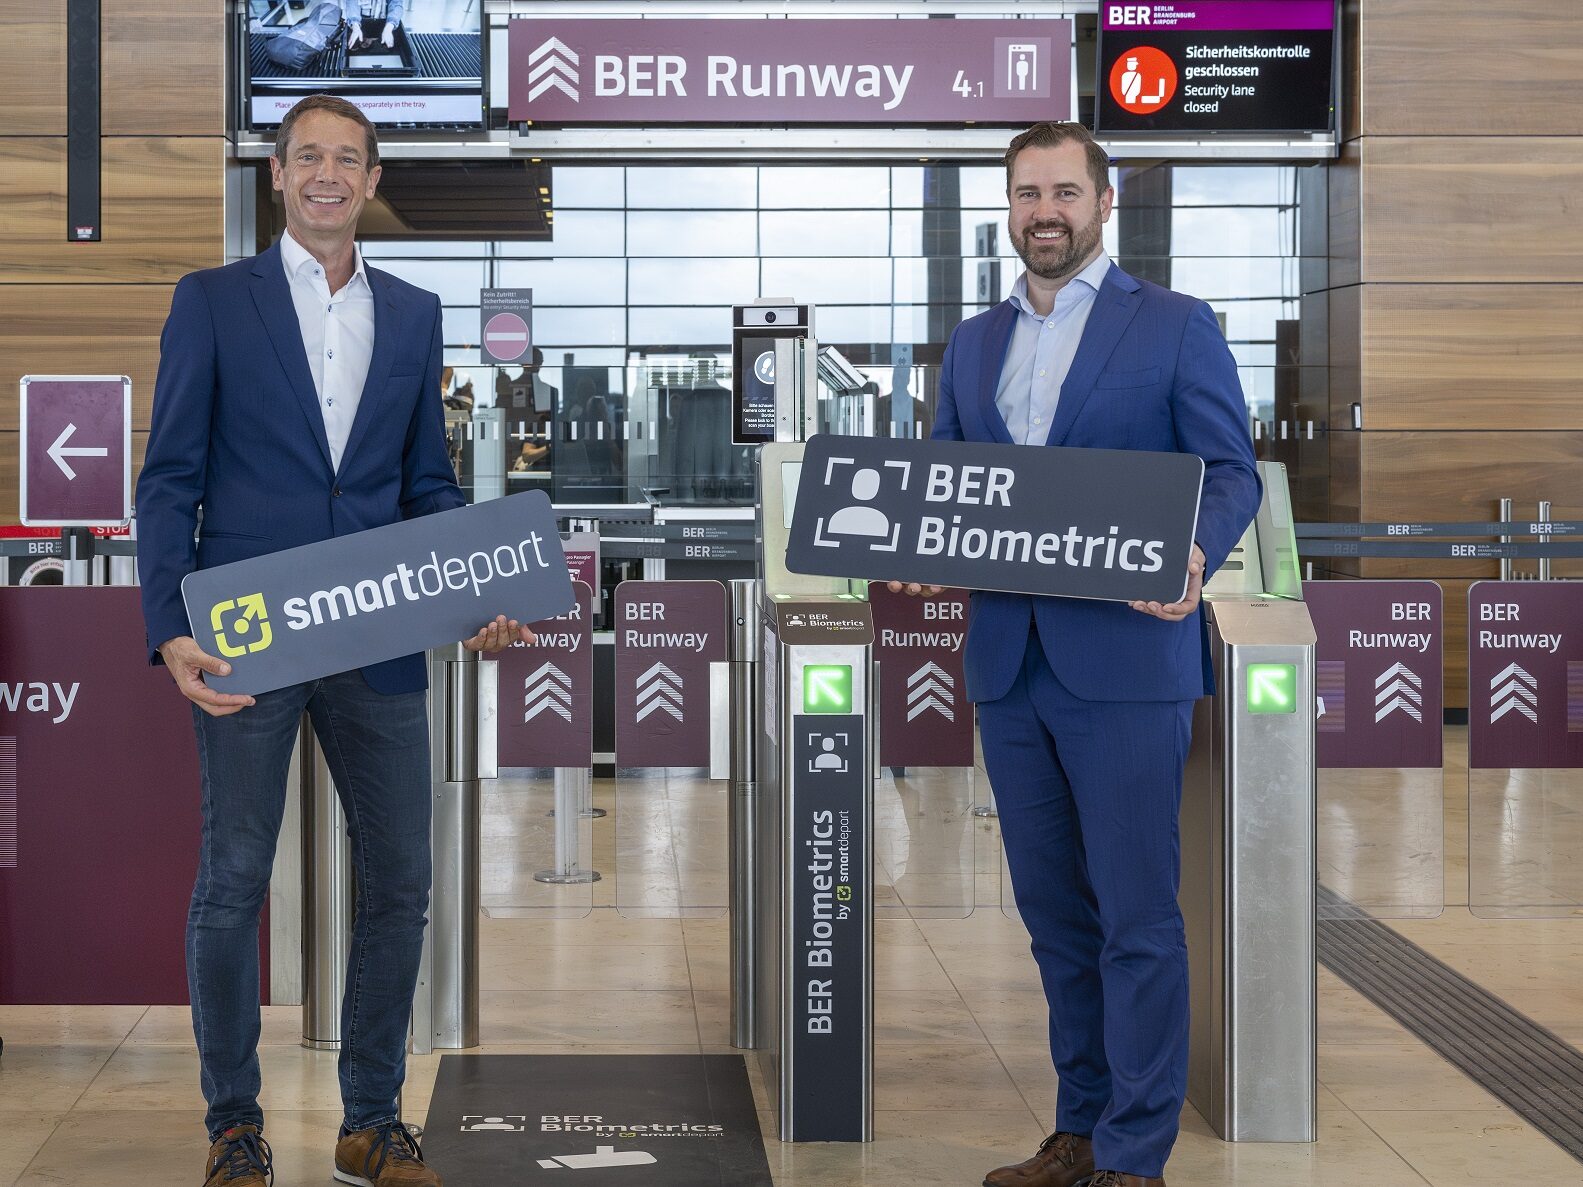 BER Biometrics Launched at Berlin Airport